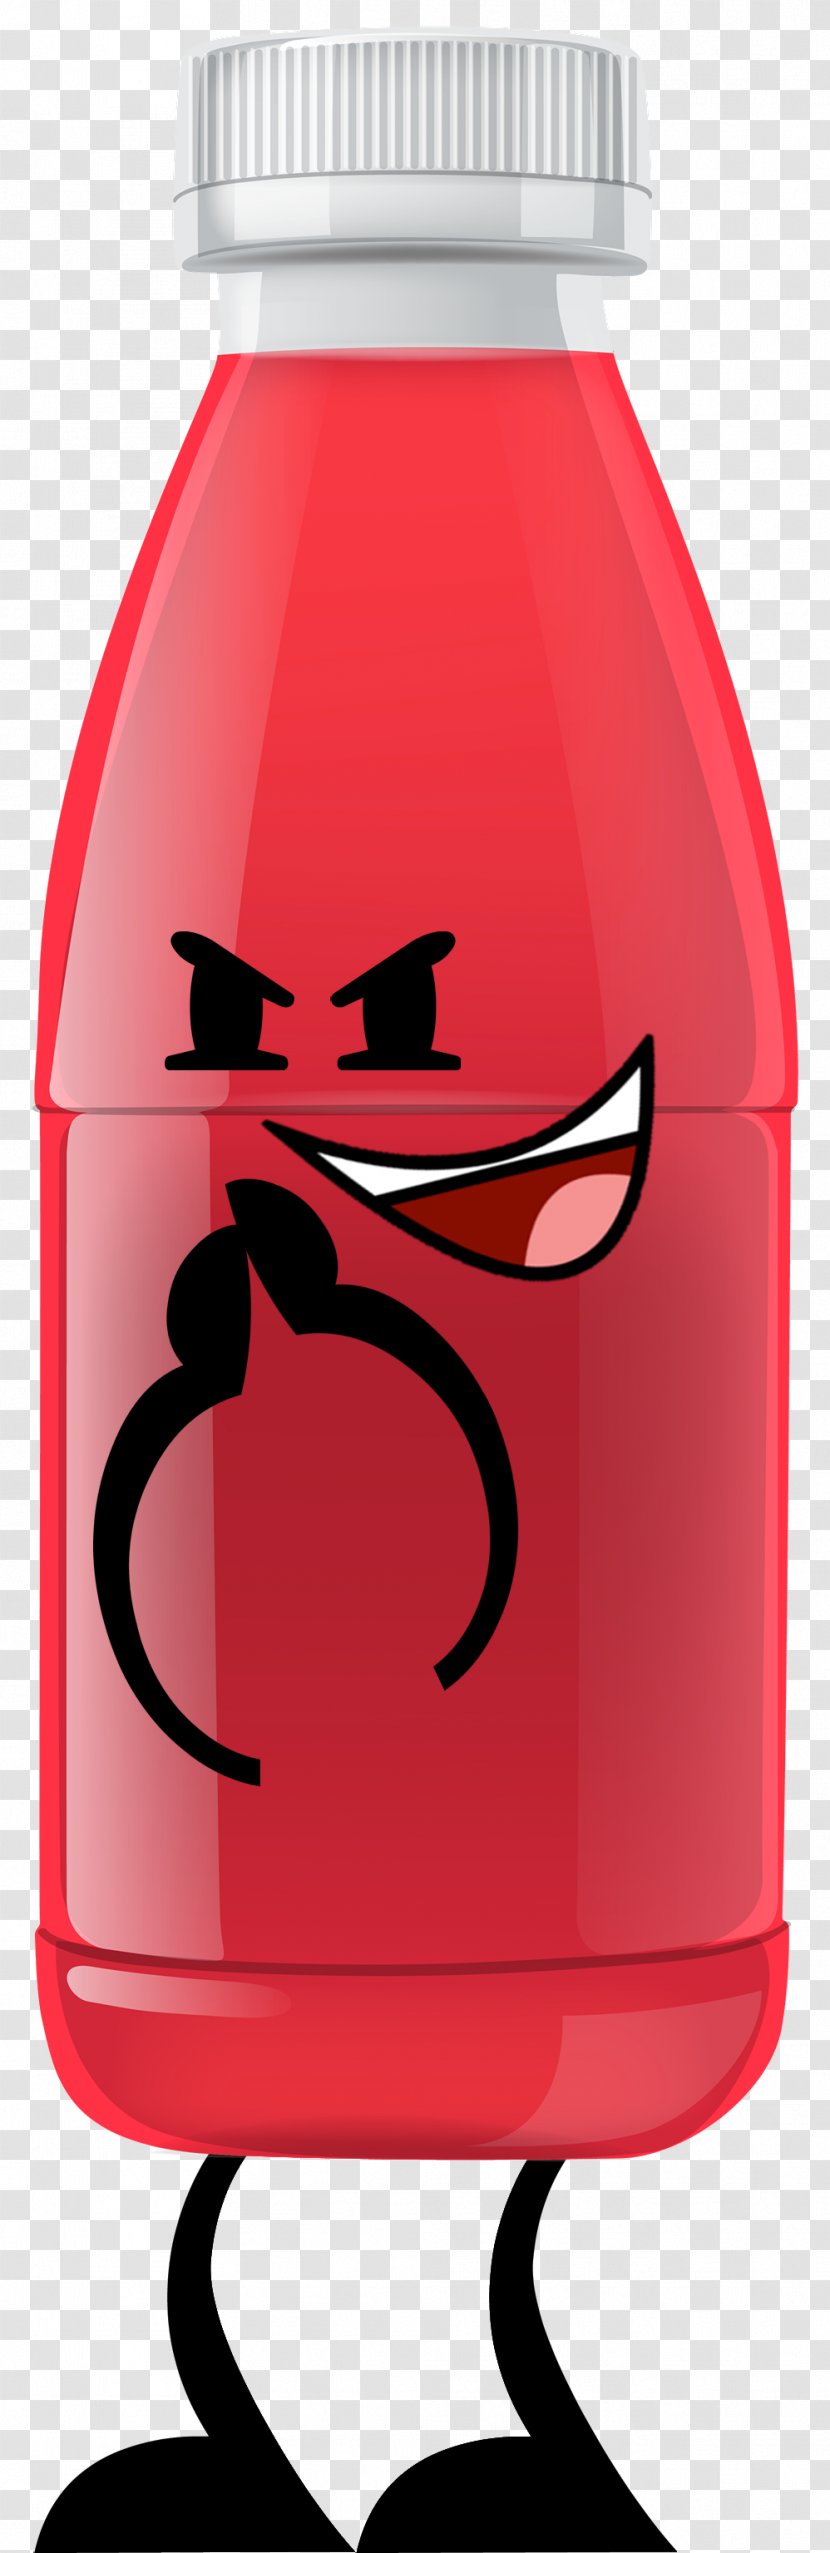 Orange Juice Apple Bottle Clip Art - Big Red Transparent PNG